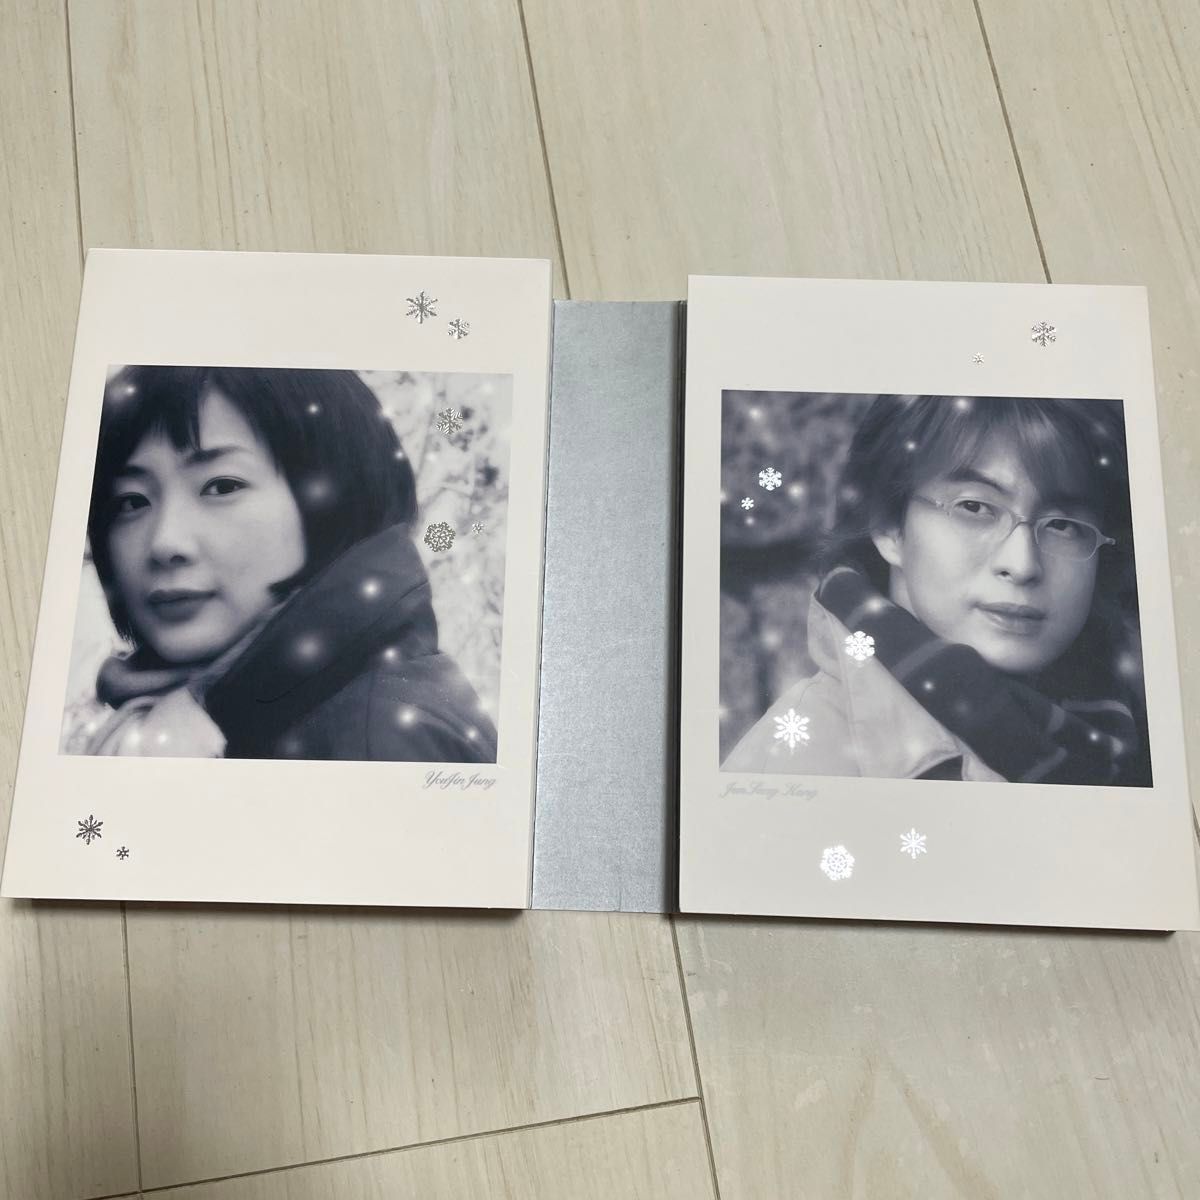 冬のソナタ 韓国KBSノーカット完全版 DVD BOX 初回限定フォトブック オリジナルポストカード(3枚)スペシャルDVD付